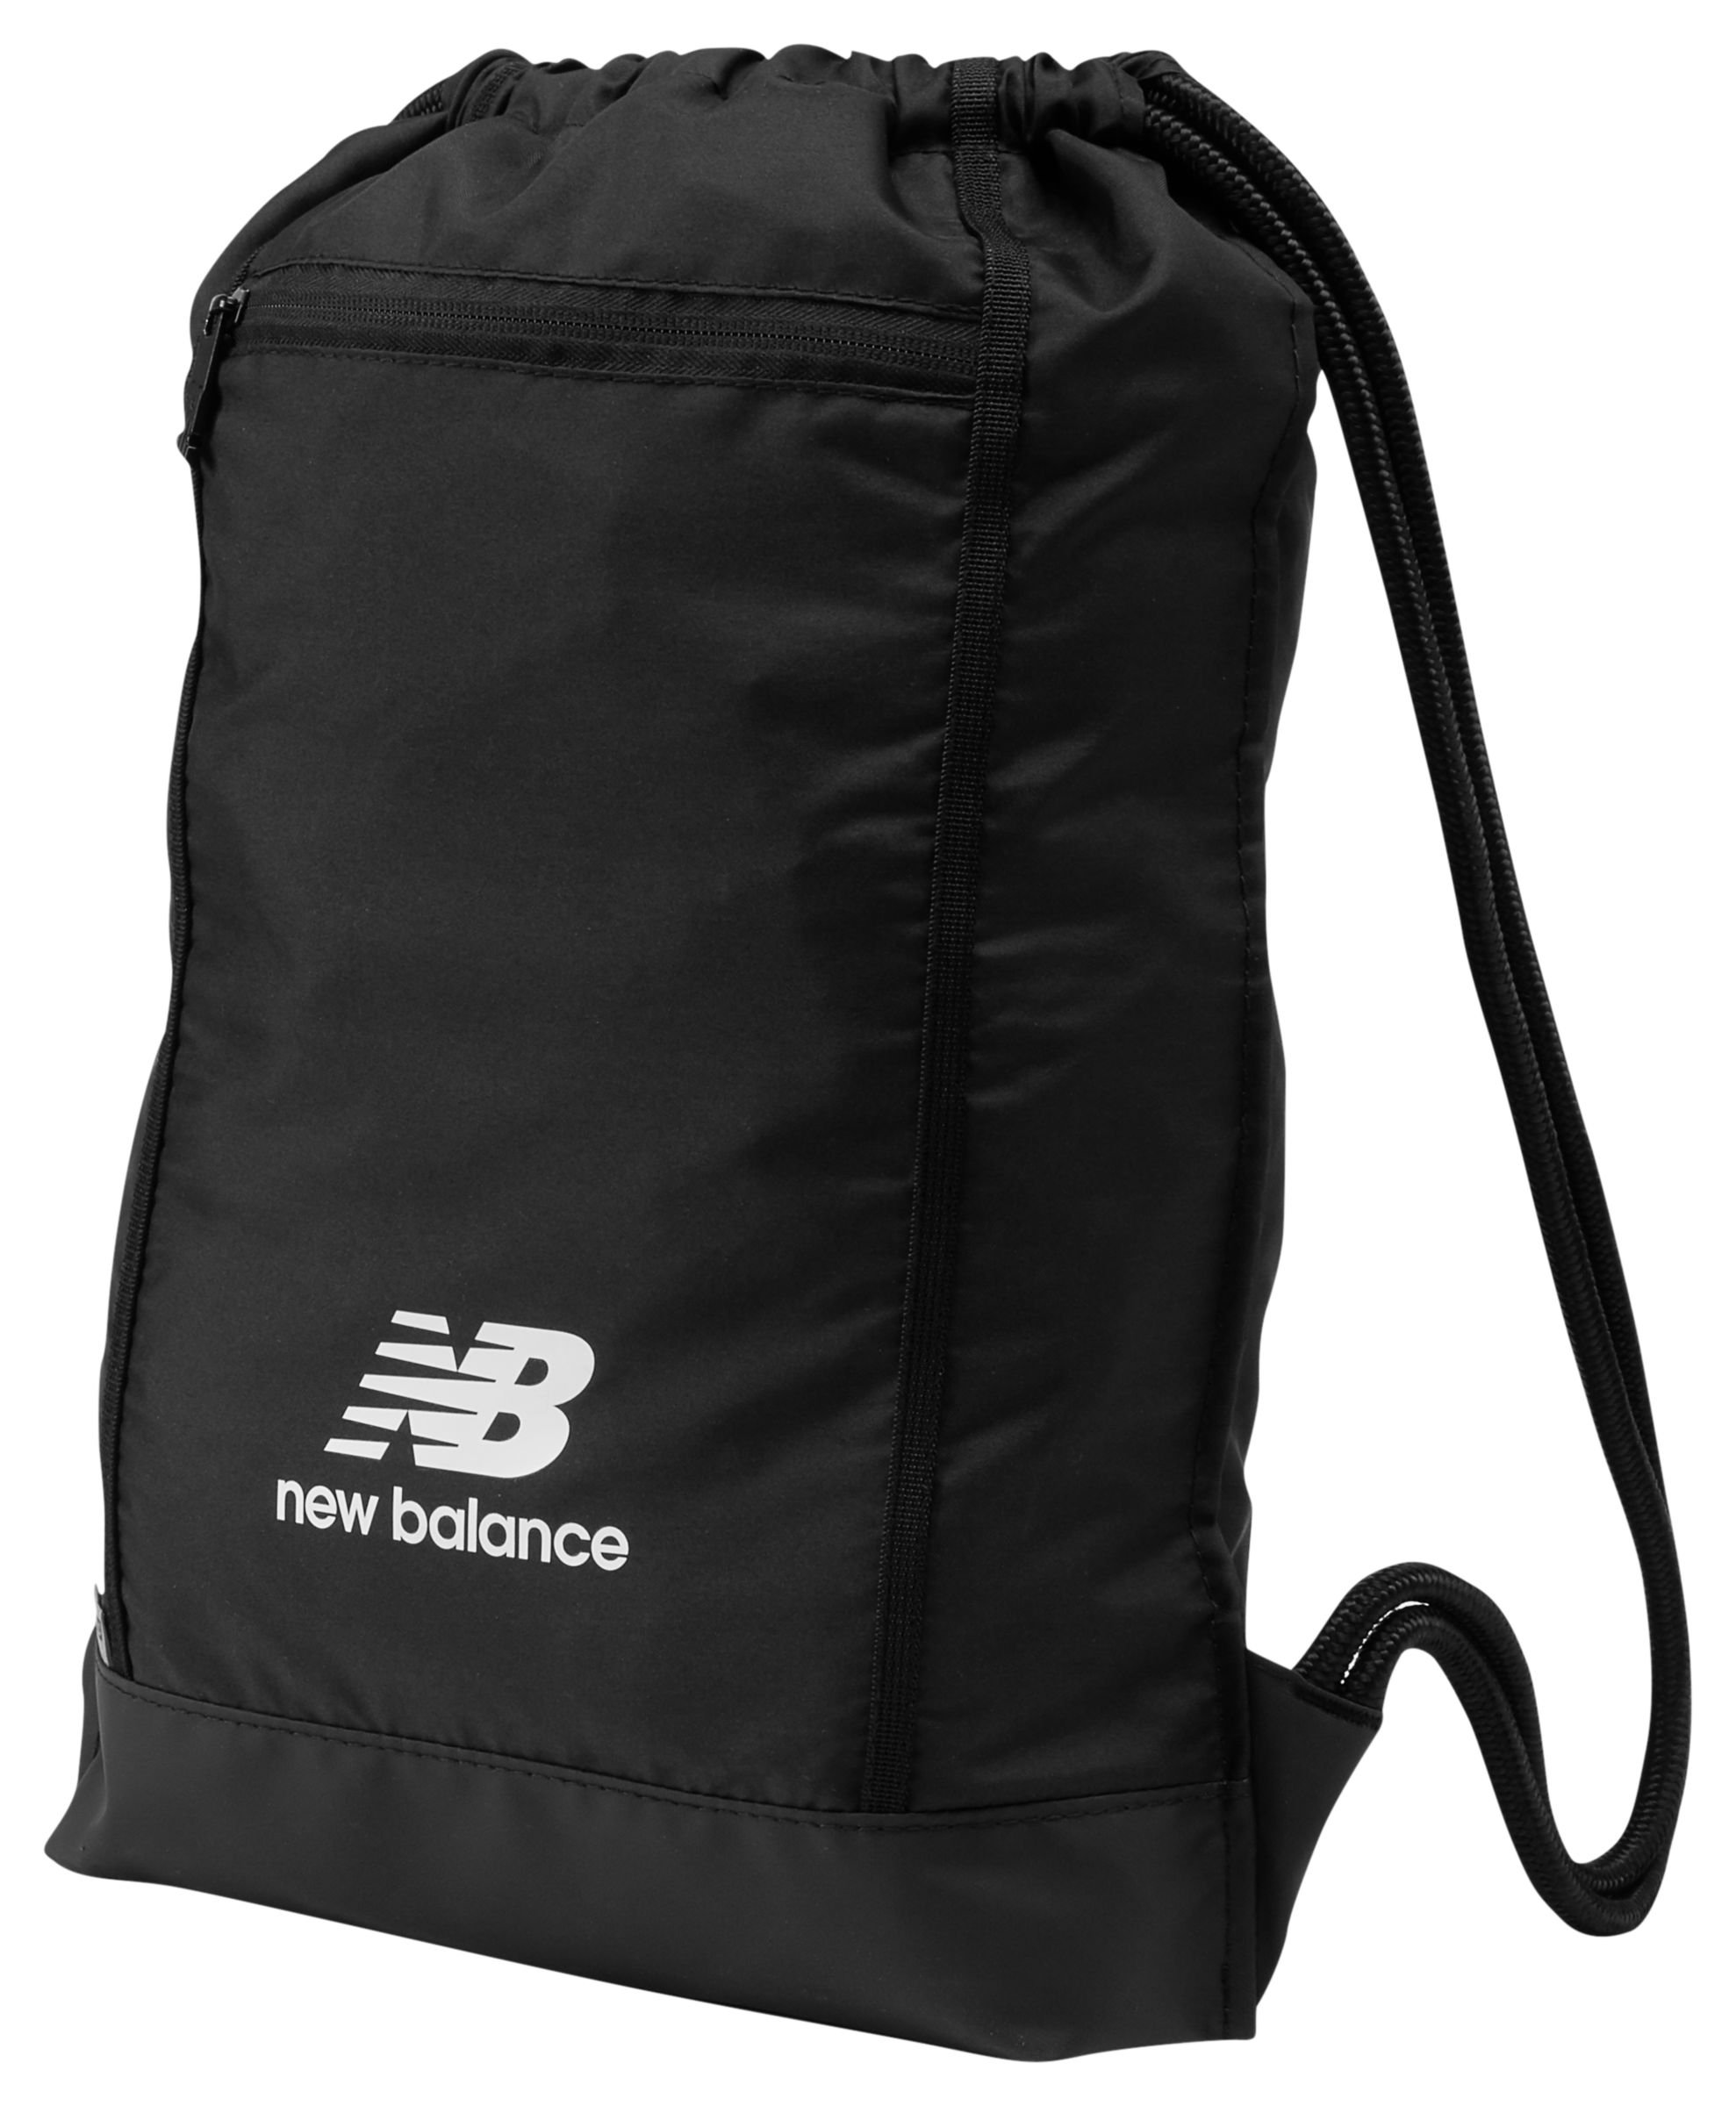 new balance gym bags